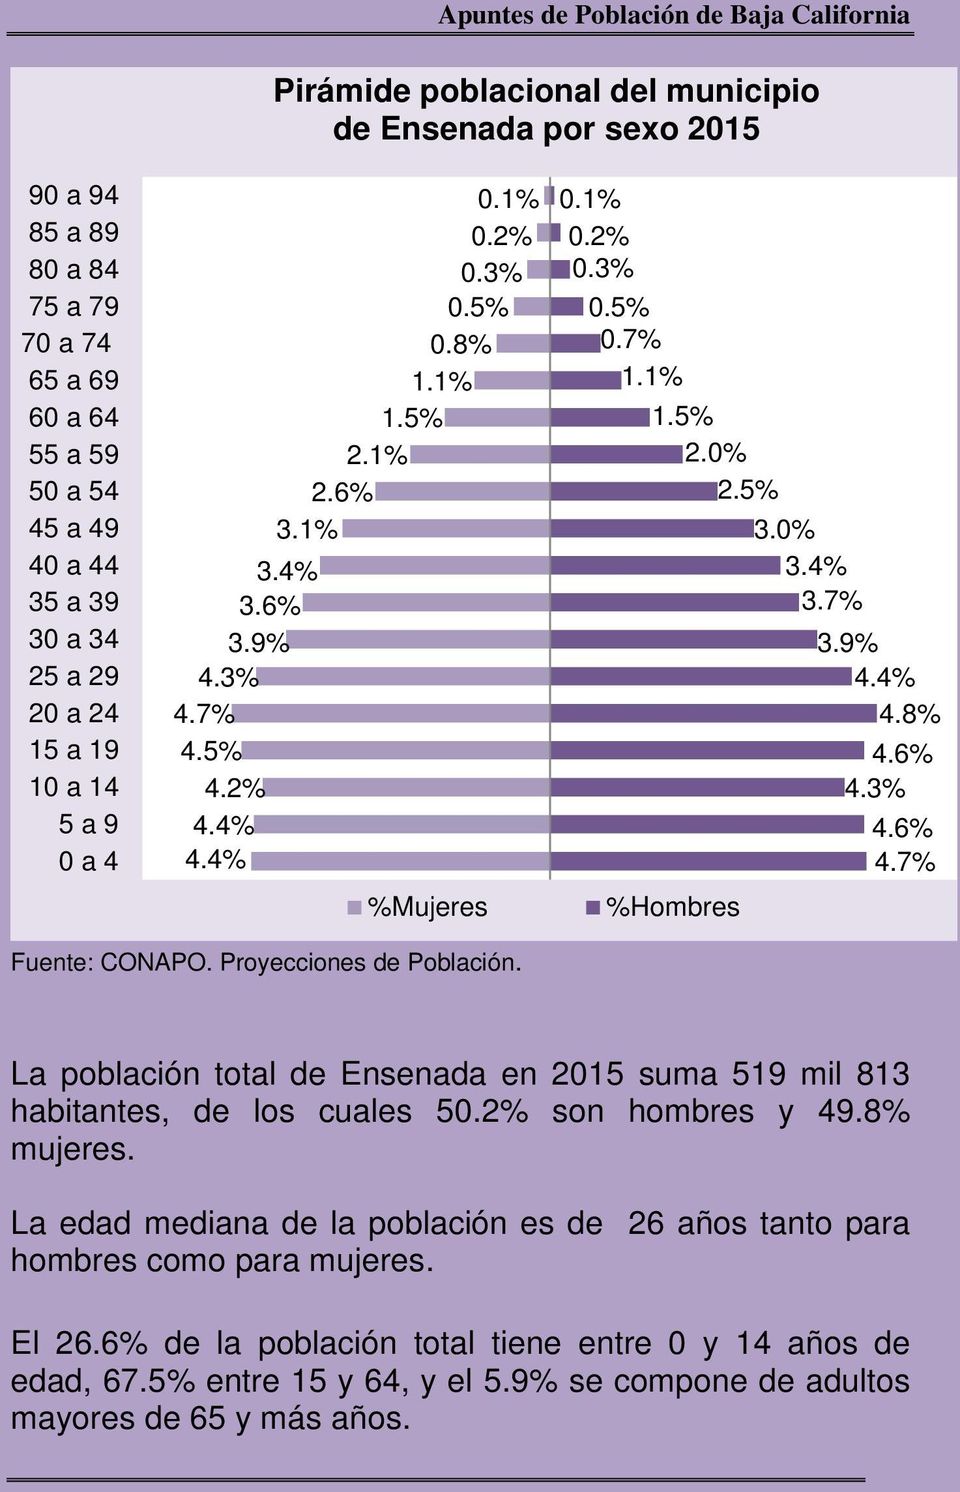 8% %Hombres La población total de Ensenada en 2015 suma 519 mil 813 habitantes, de los cuales 5 son hombres y 49.8% mujeres.